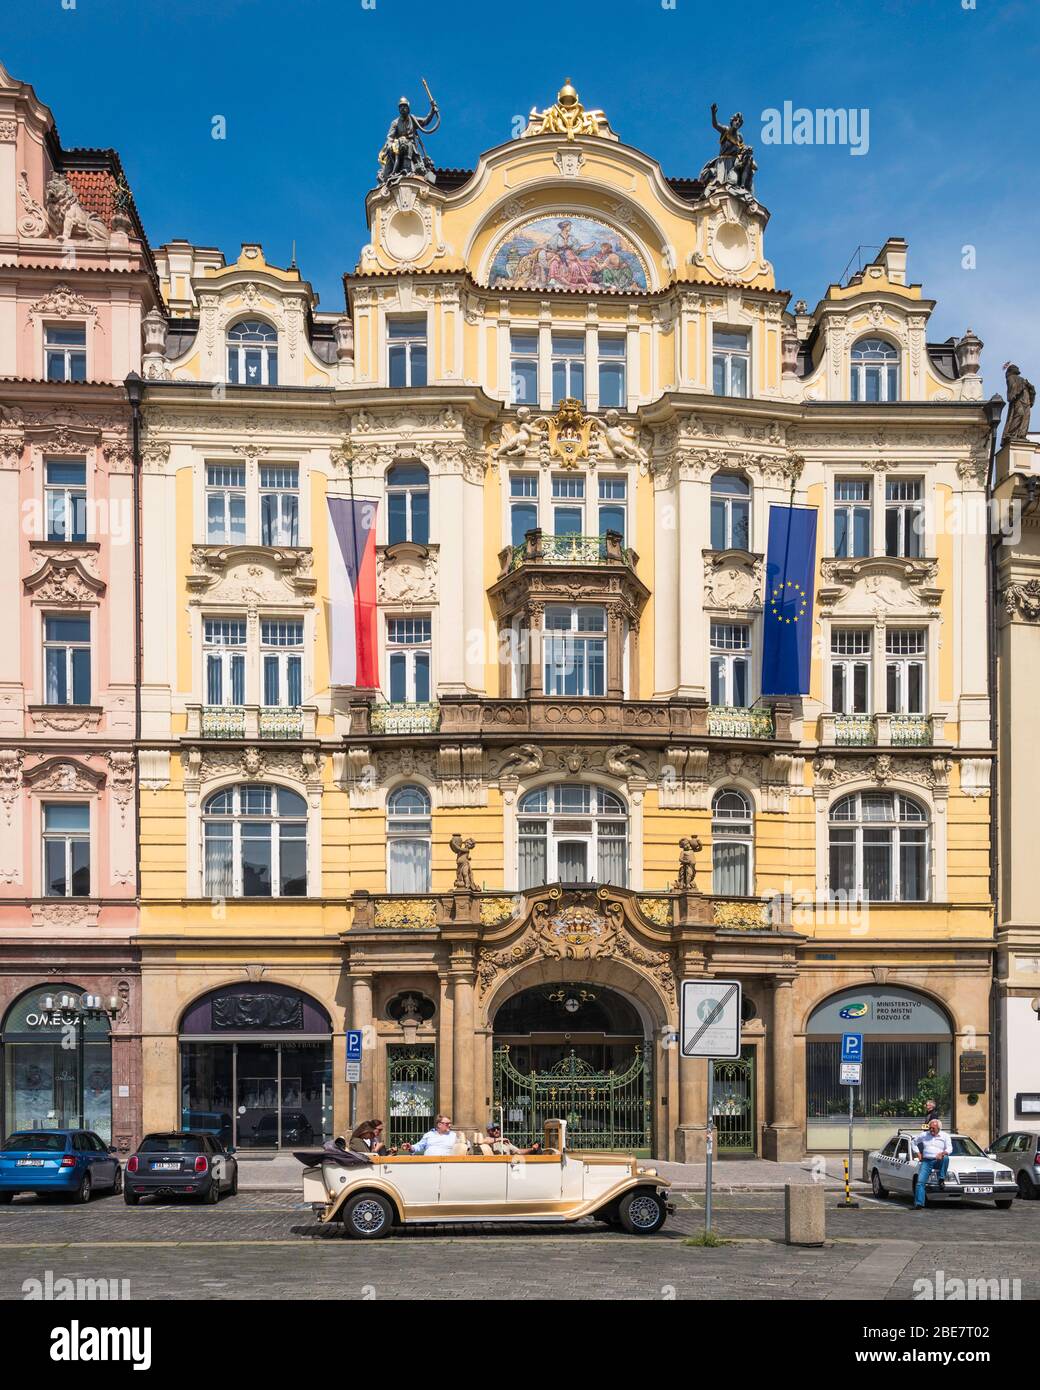 Pražská městská pojišťovna (1899-1901), 'Prague City Insurance Company' is an Art Nouveau building  in the Old Town Square, Prague, Czech Republic. Stock Photo